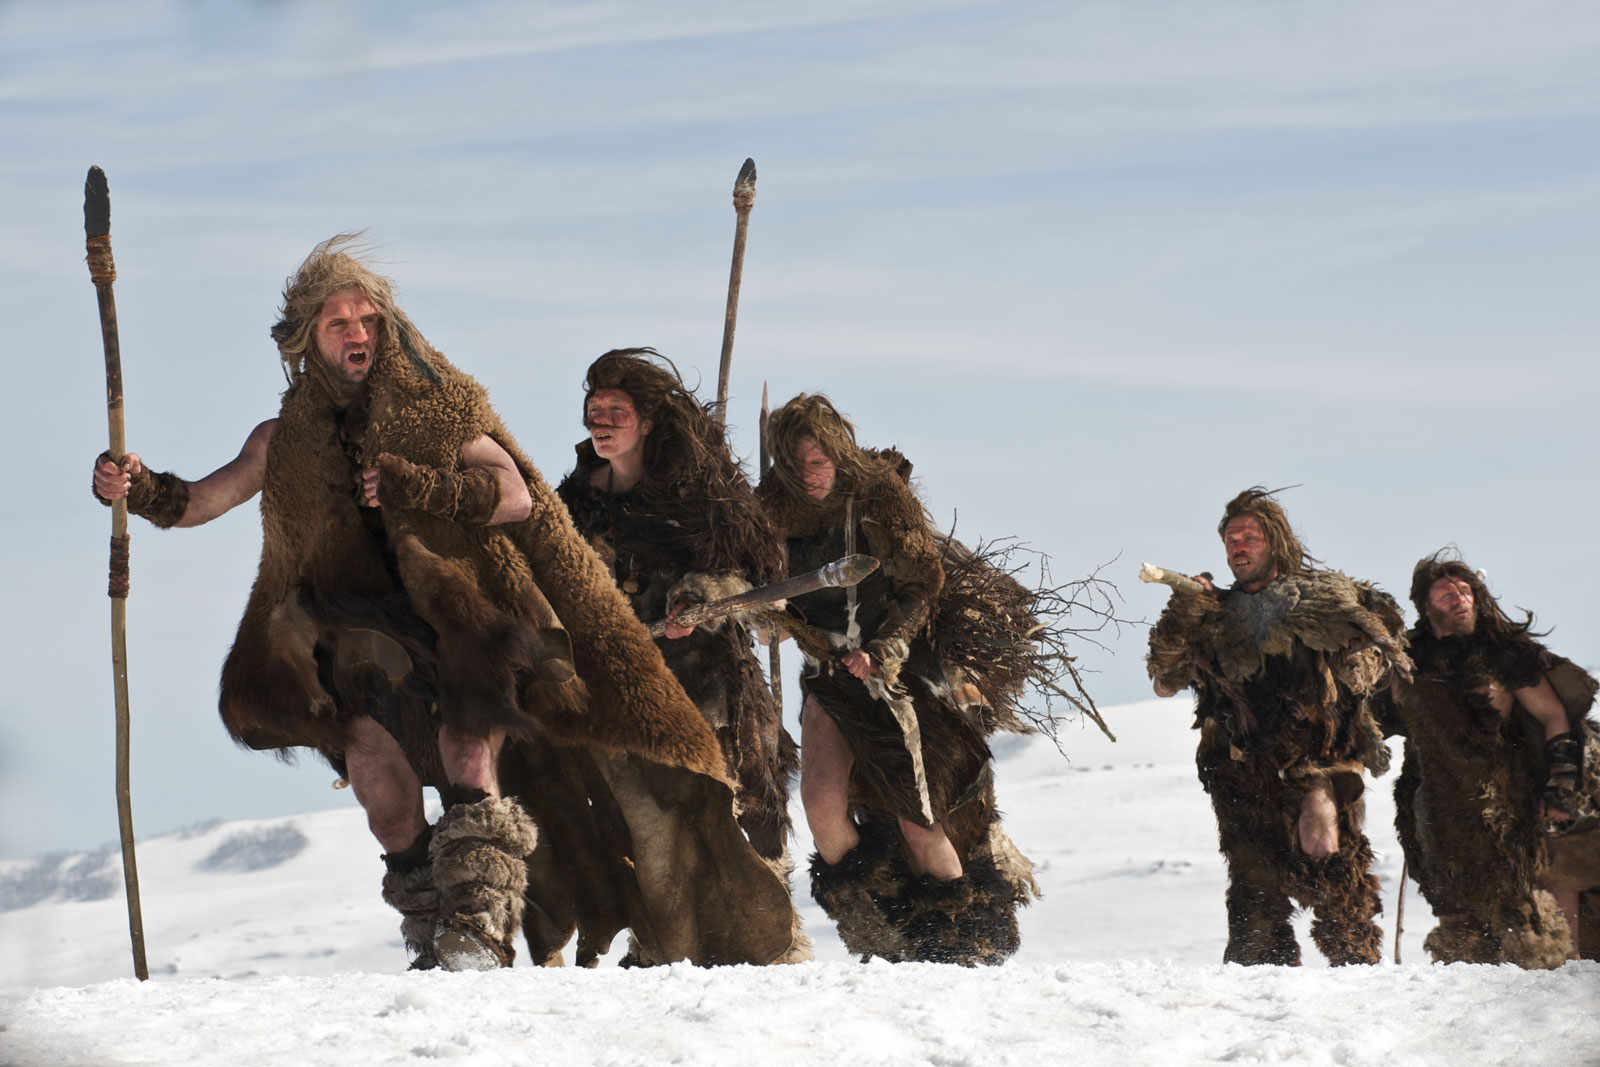 Groupe de Néandertaliens marchant dans un paysage enneigé